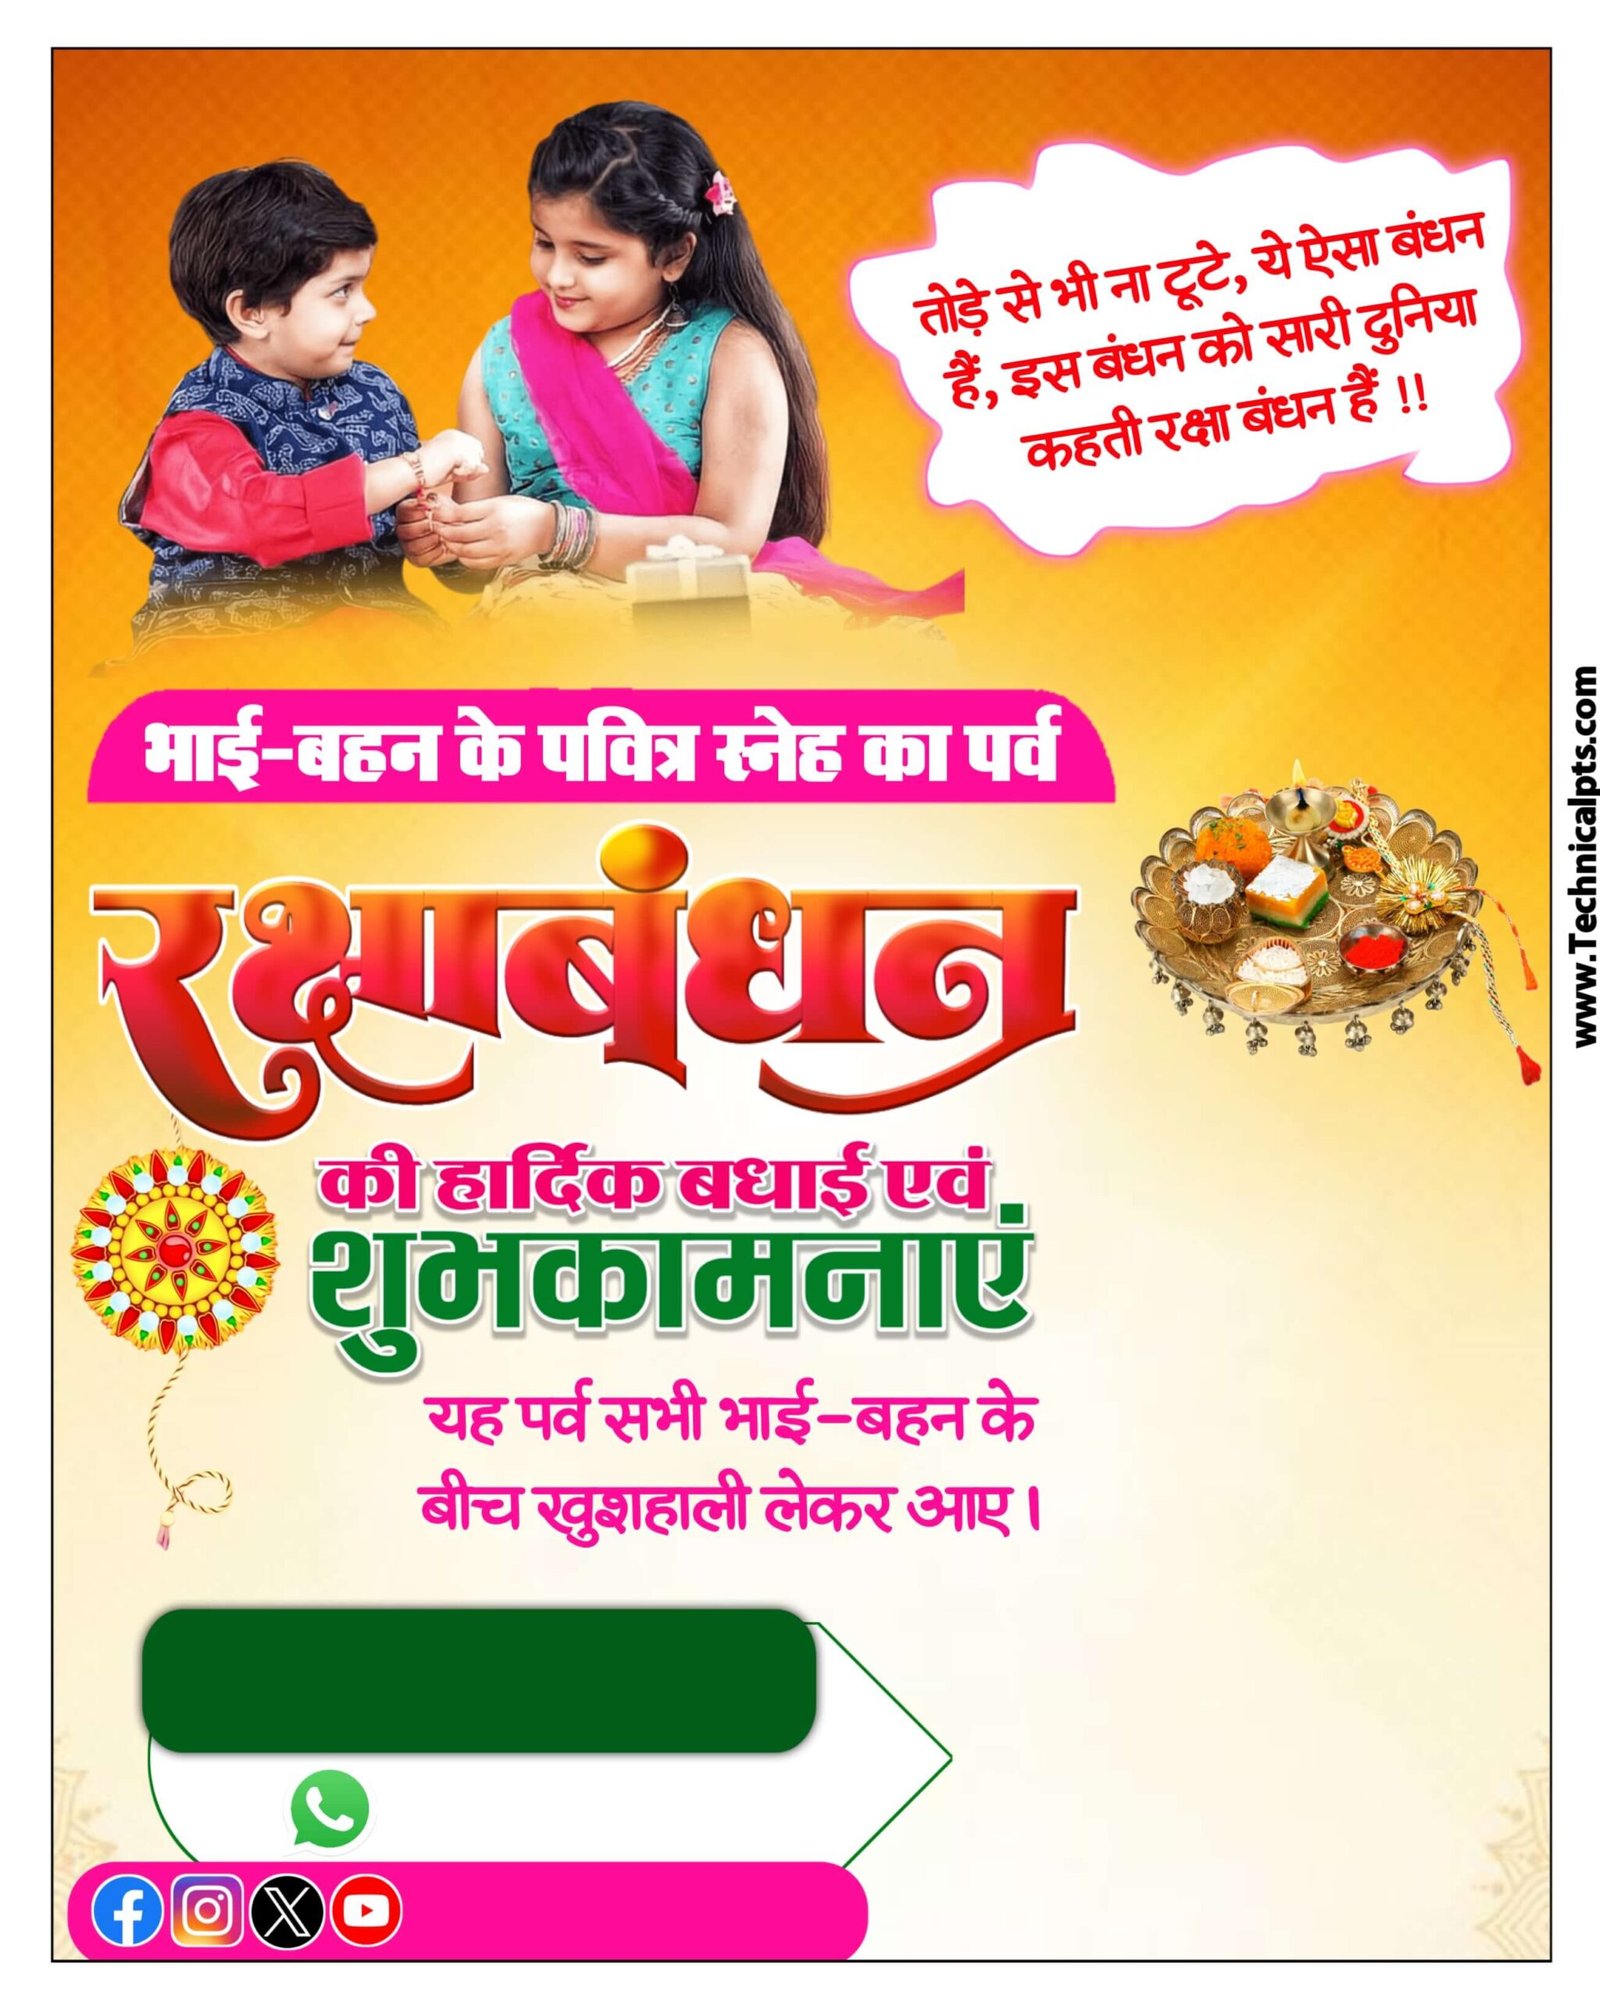 Mobile se Raksha Bandhan banner Kaise banaye | Raksha Bandhan ka poster Kaise banaen| Raksha Bandhan banner editing png background